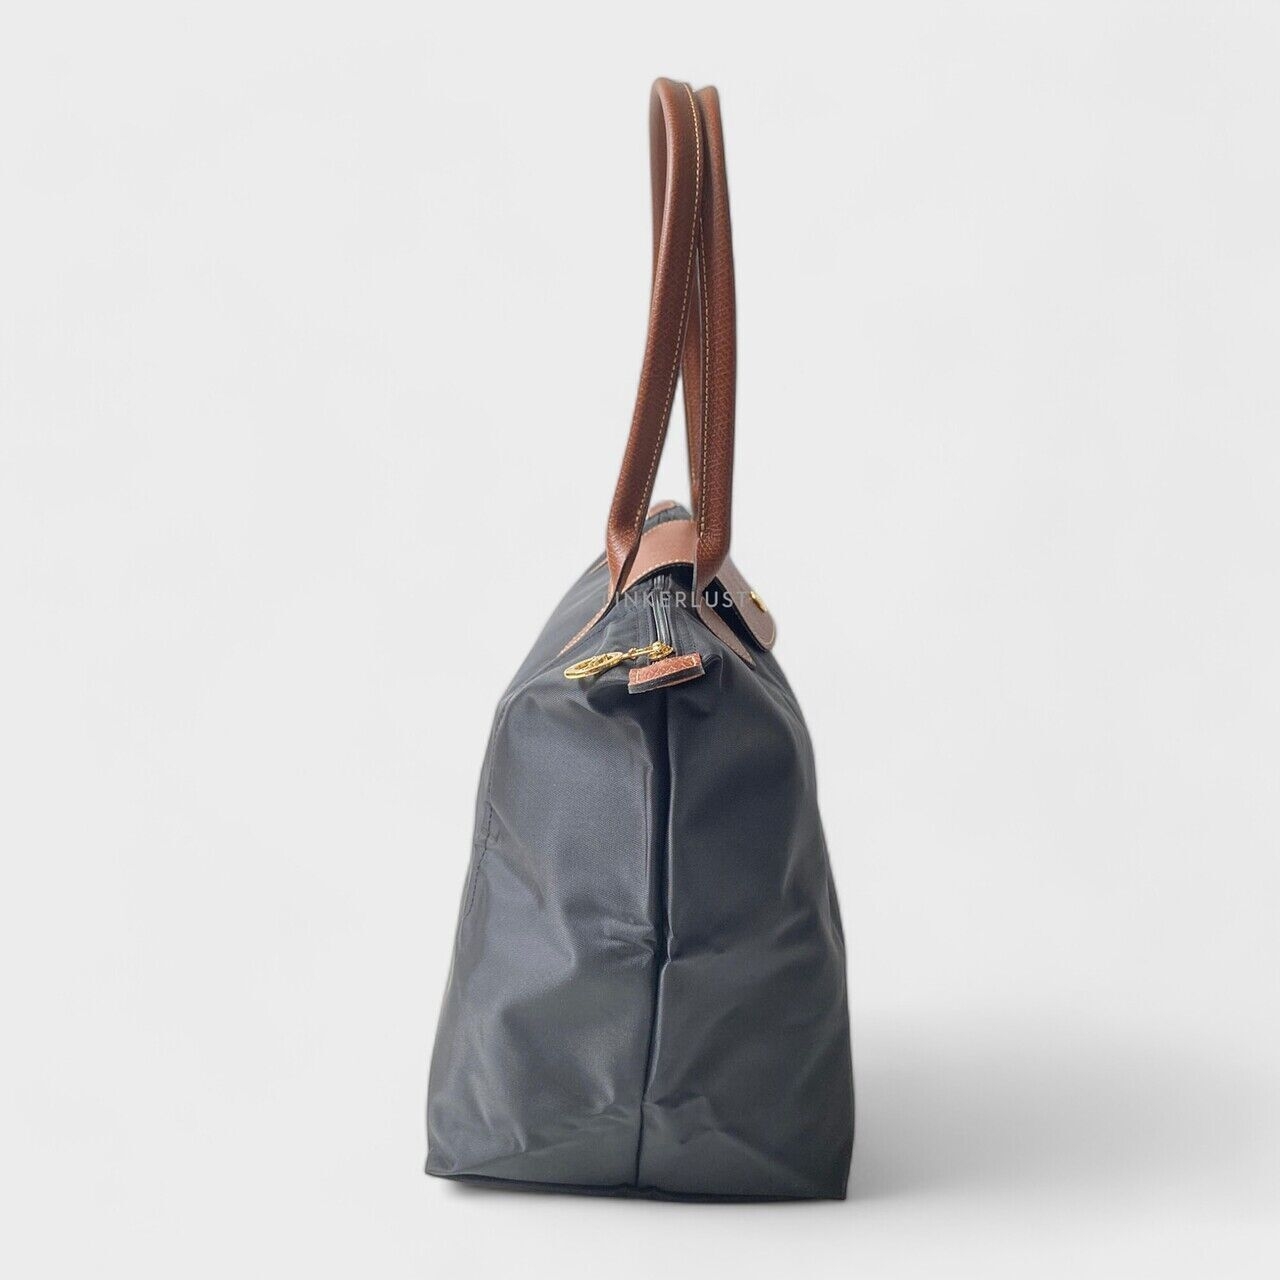 Longchamp Le Pliage Original Large Long Handle Black Tote Bag